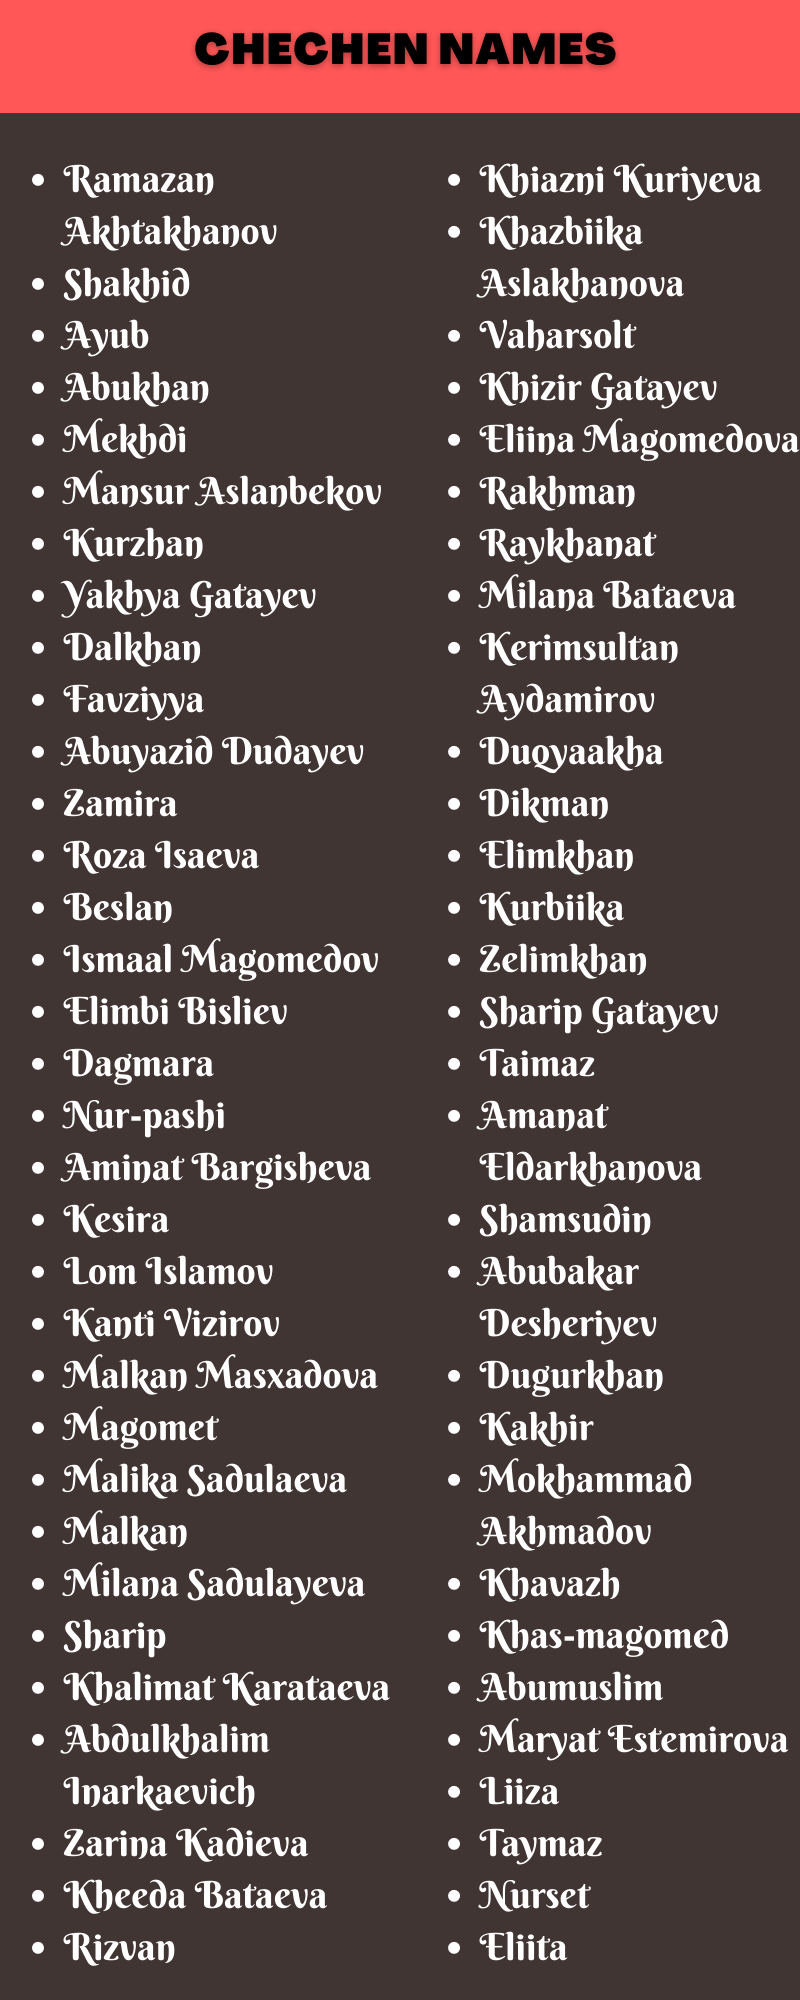 Chechen Names